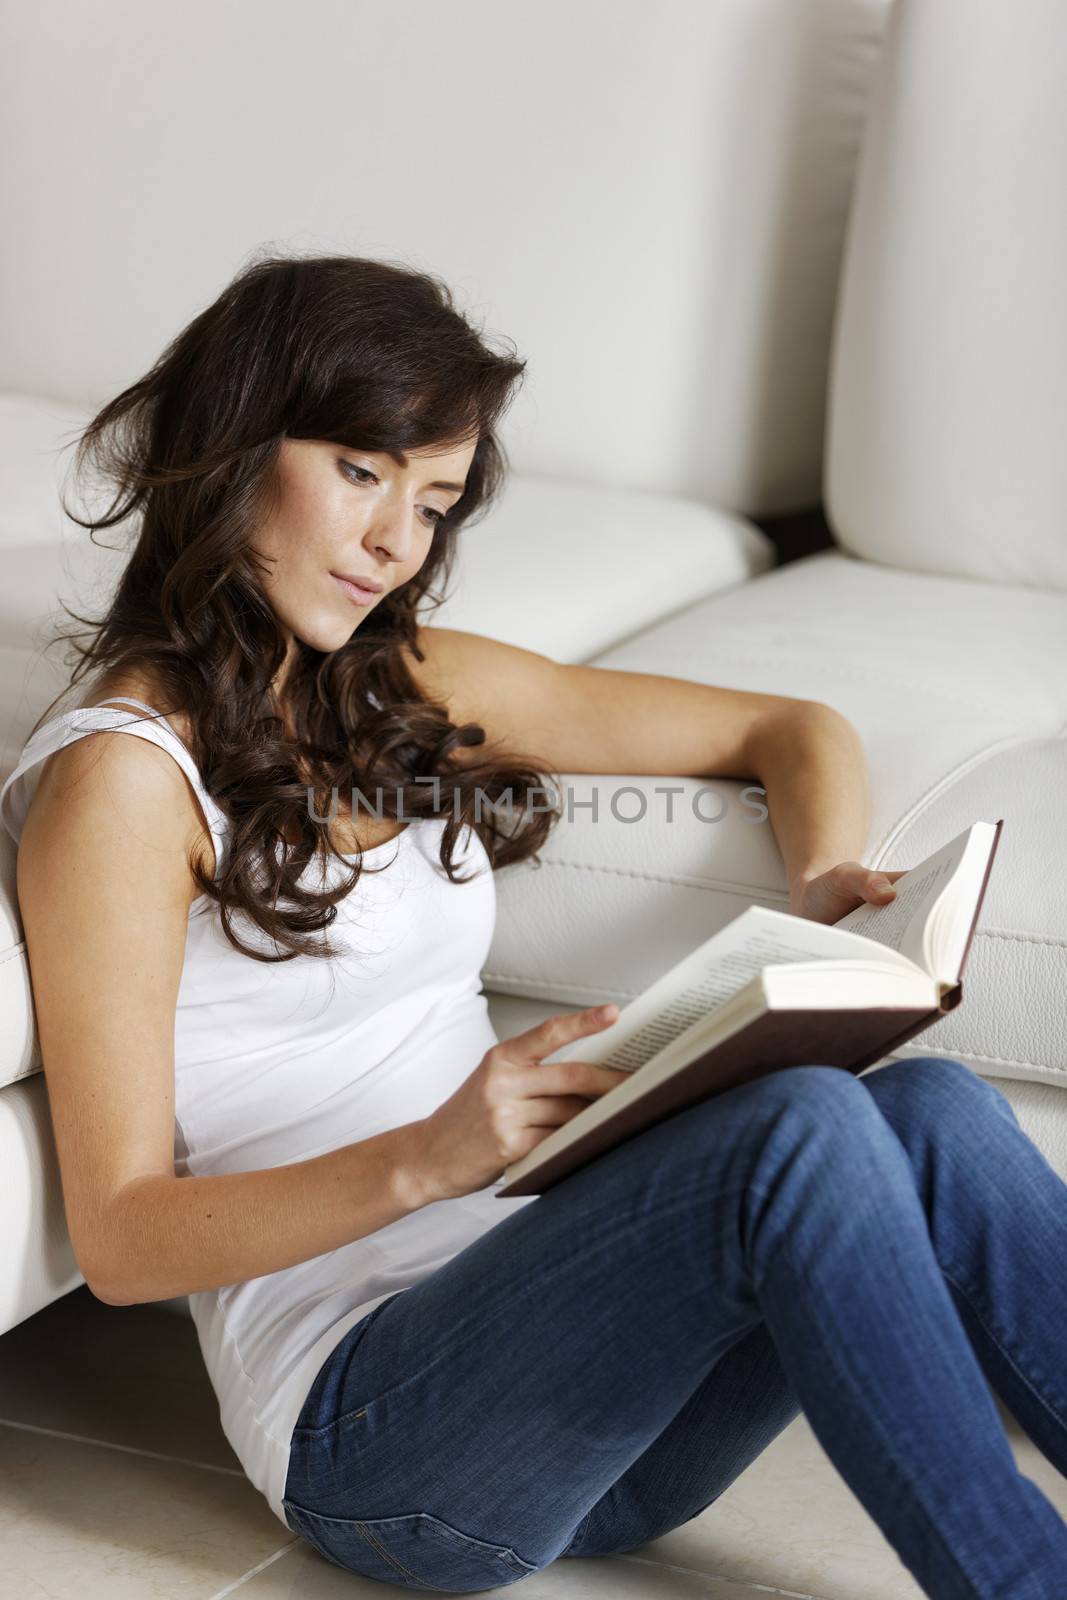 Woman reading a book by studiofi